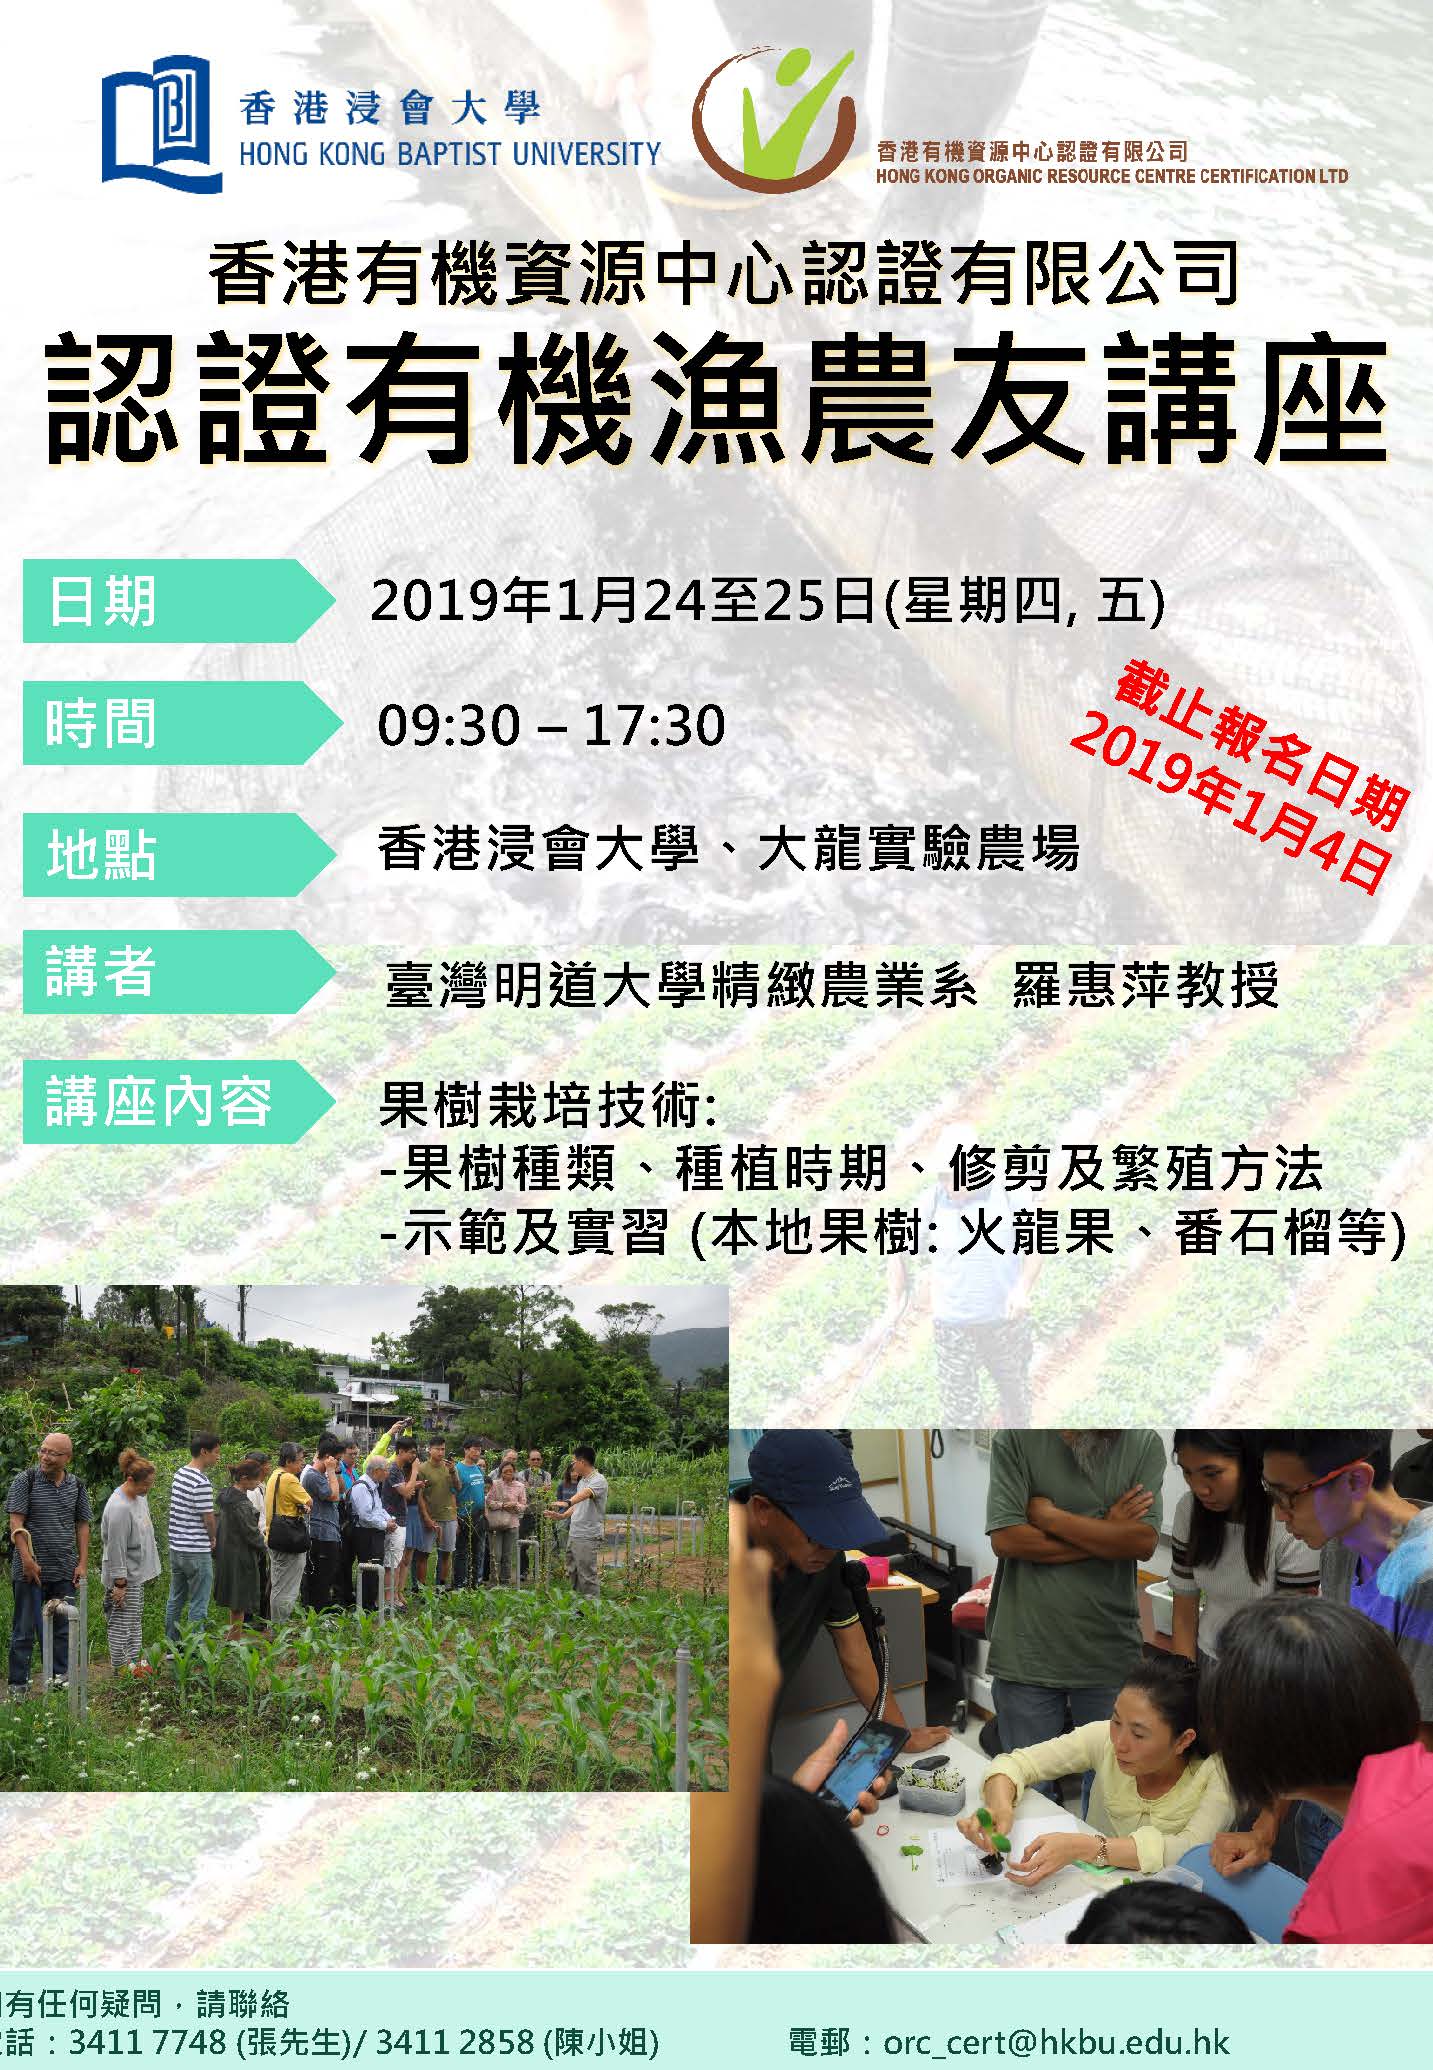 認證有機農友講座 果樹栽培技術 香港有機資源中心認證有限公司